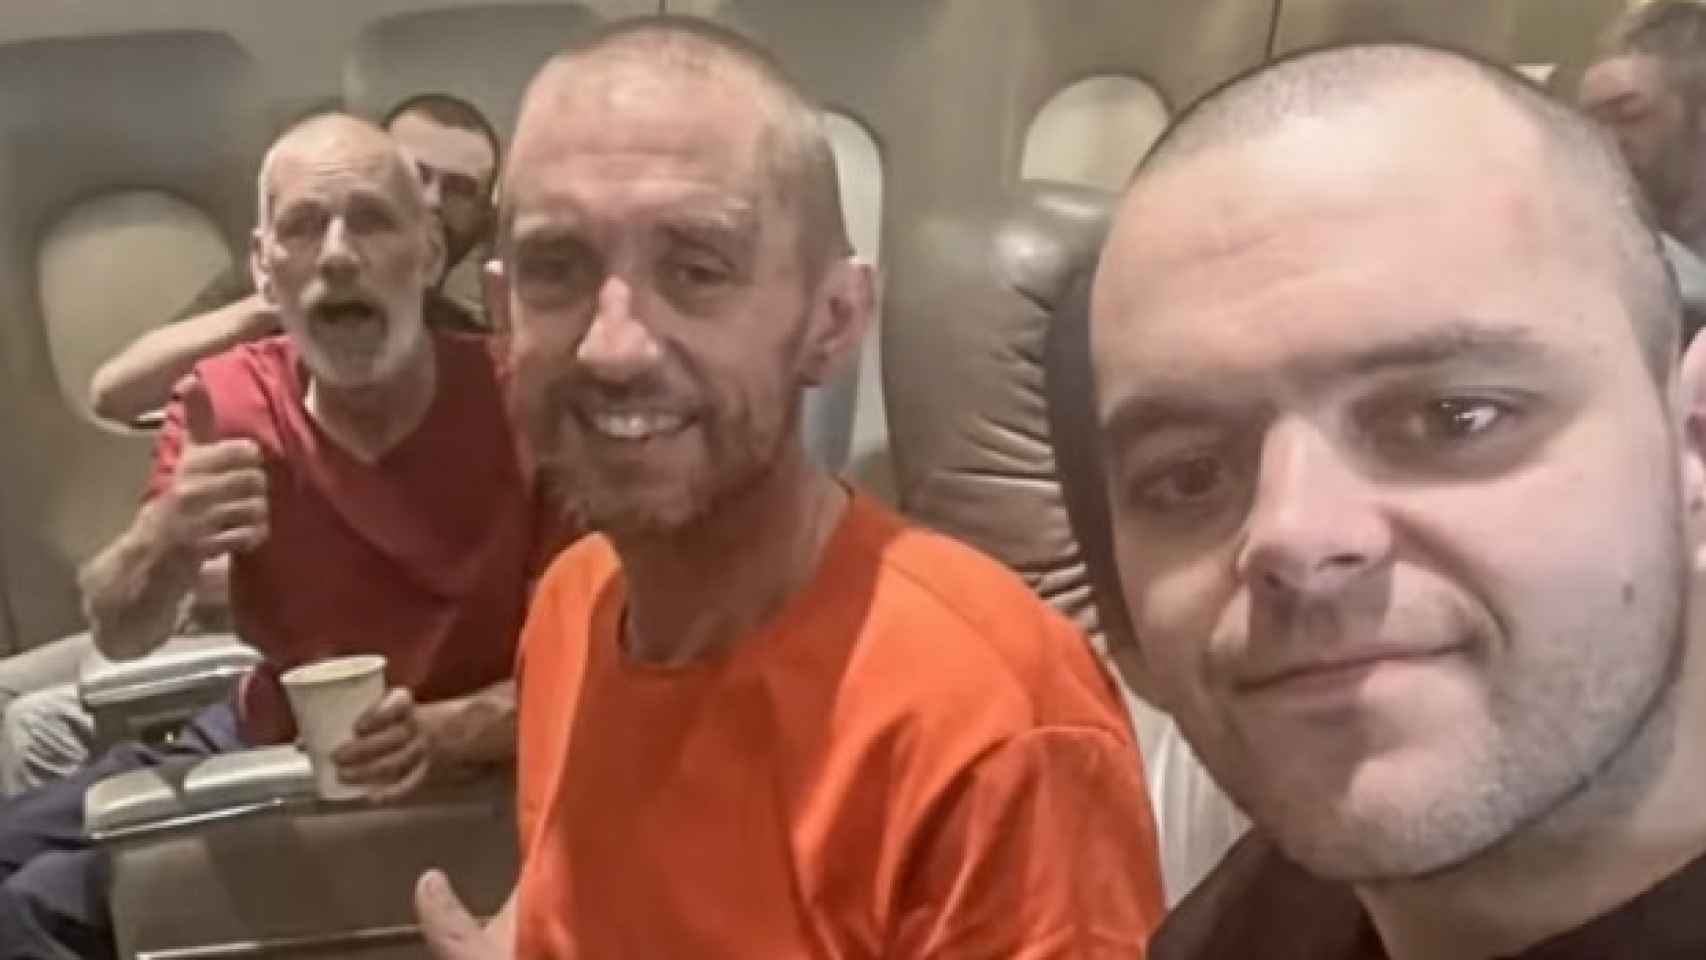 De izquierda a derecha, John Harding, Shaun Pinner y Aiden Aslin, en el avión, tras su liberación, de vuelto al Reino Unido.